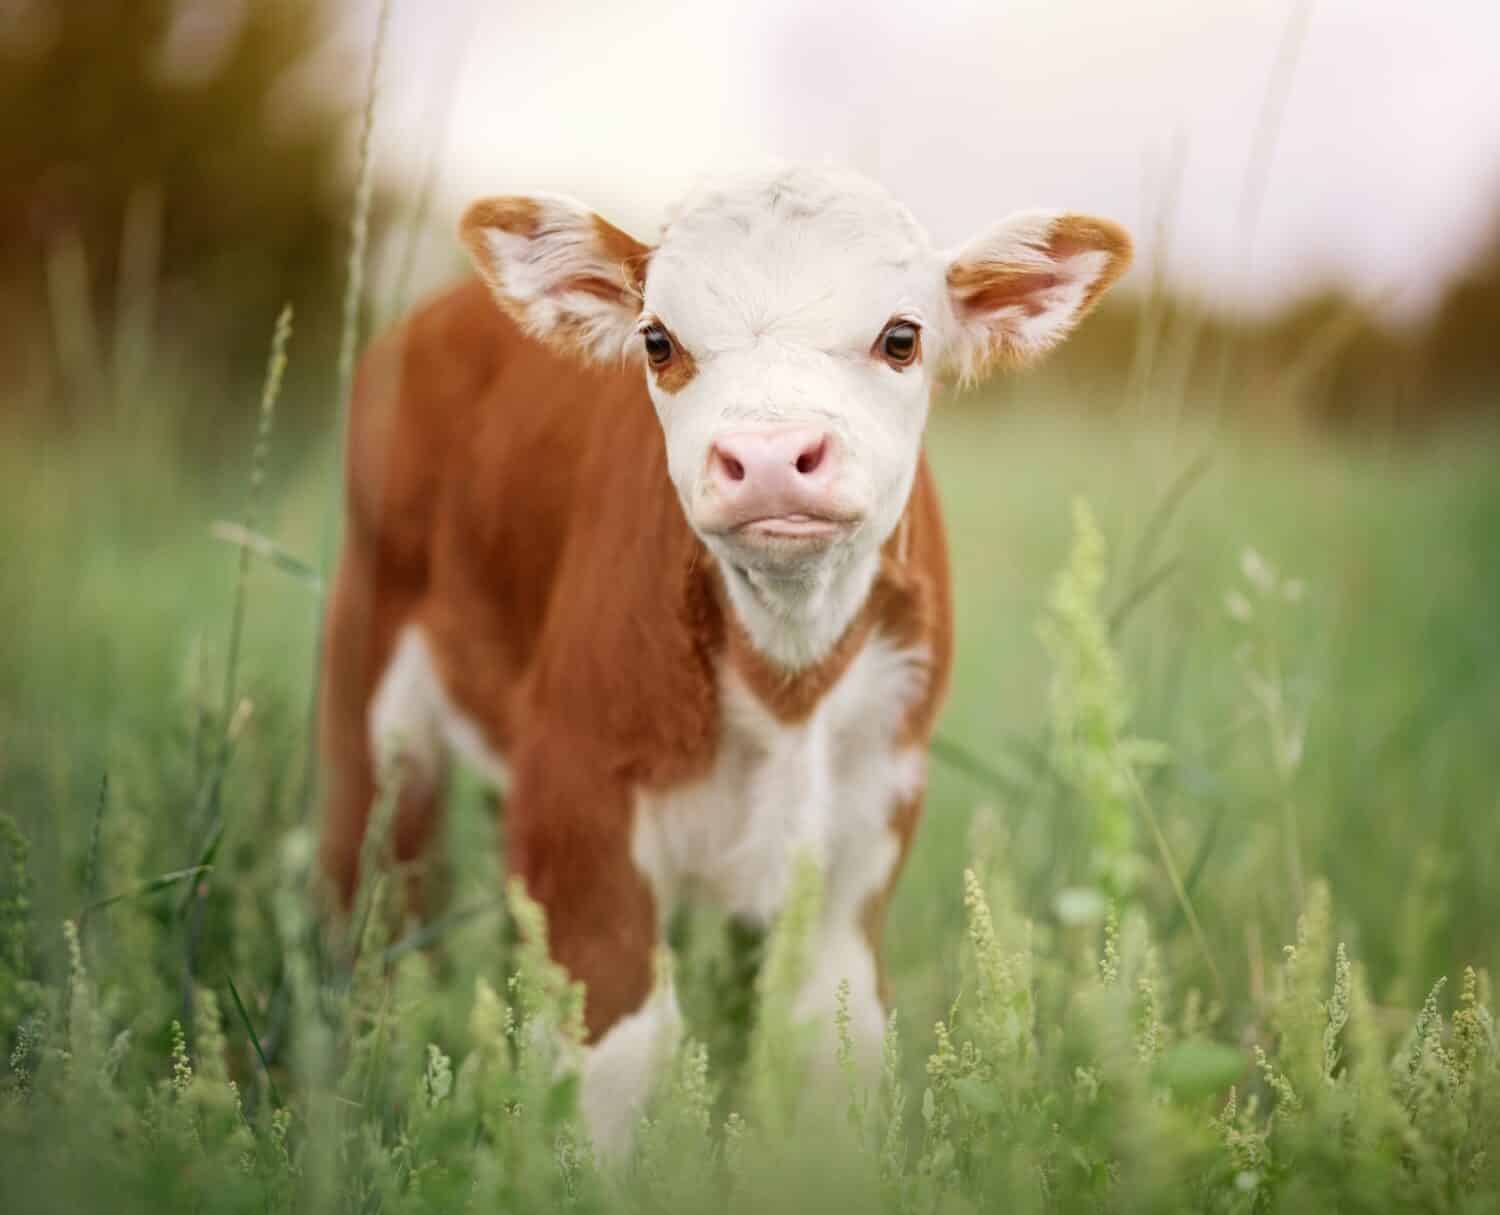 Mini-cow breeds. : r/Cows